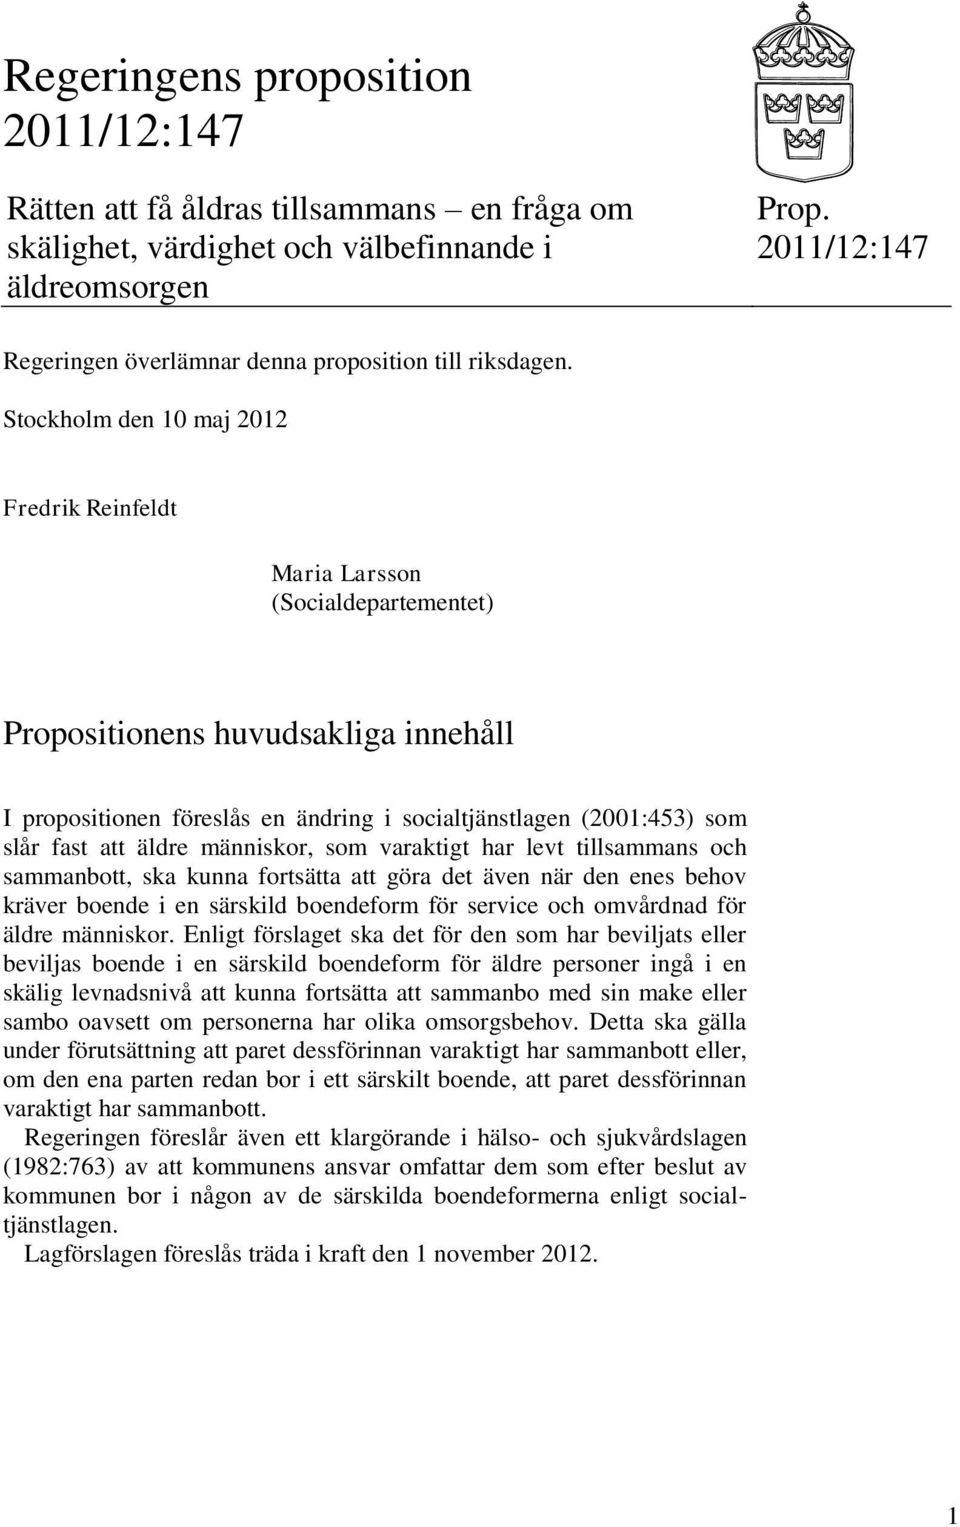 Stockholm den 10 maj 2012 Fredrik Reinfeldt Maria Larsson (Socialdepartementet) Propositionens huvudsakliga innehåll I propositionen föreslås en ändring i socialtjänstlagen (2001:453) som slår fast